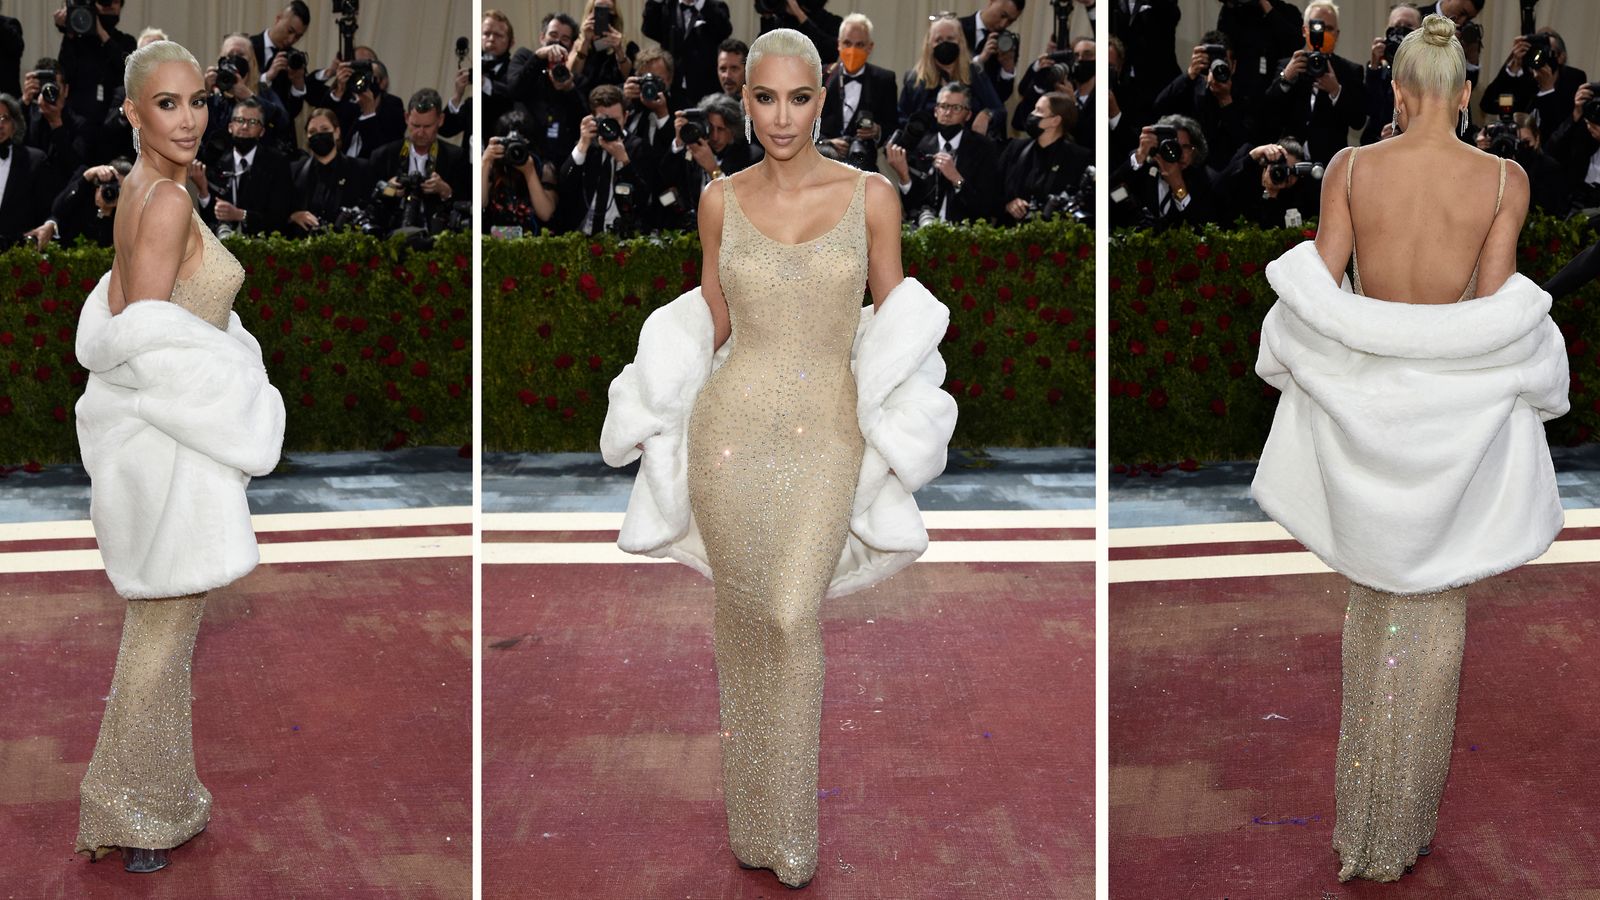 Prêter une robe Marilyn Monroe à Kim Kardashian était « irresponsable », selon un collectionneur |  Nouvelles américaines